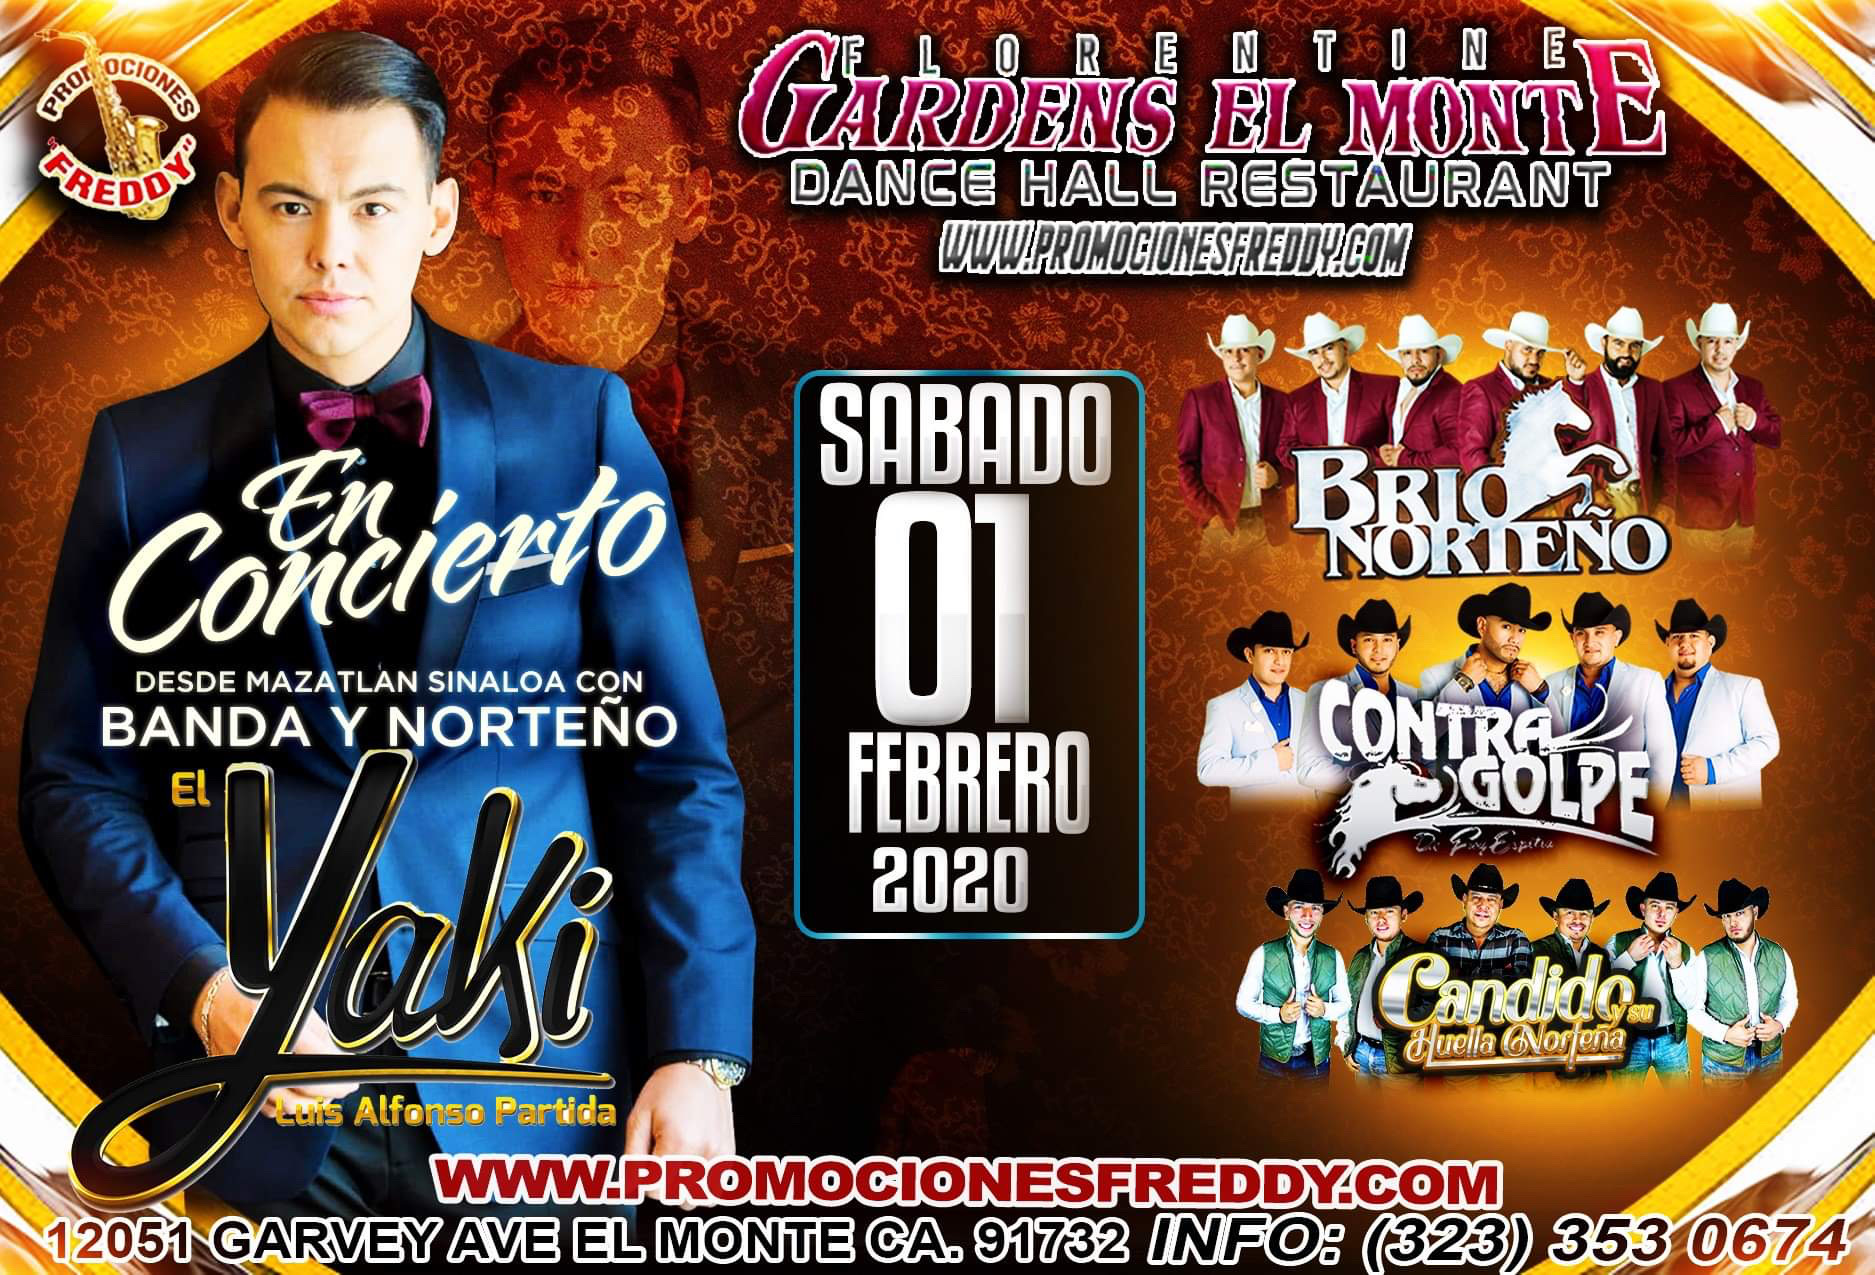 Buy Tickets To El Yaki Luis Alfonso Partida In El Monte On Feb